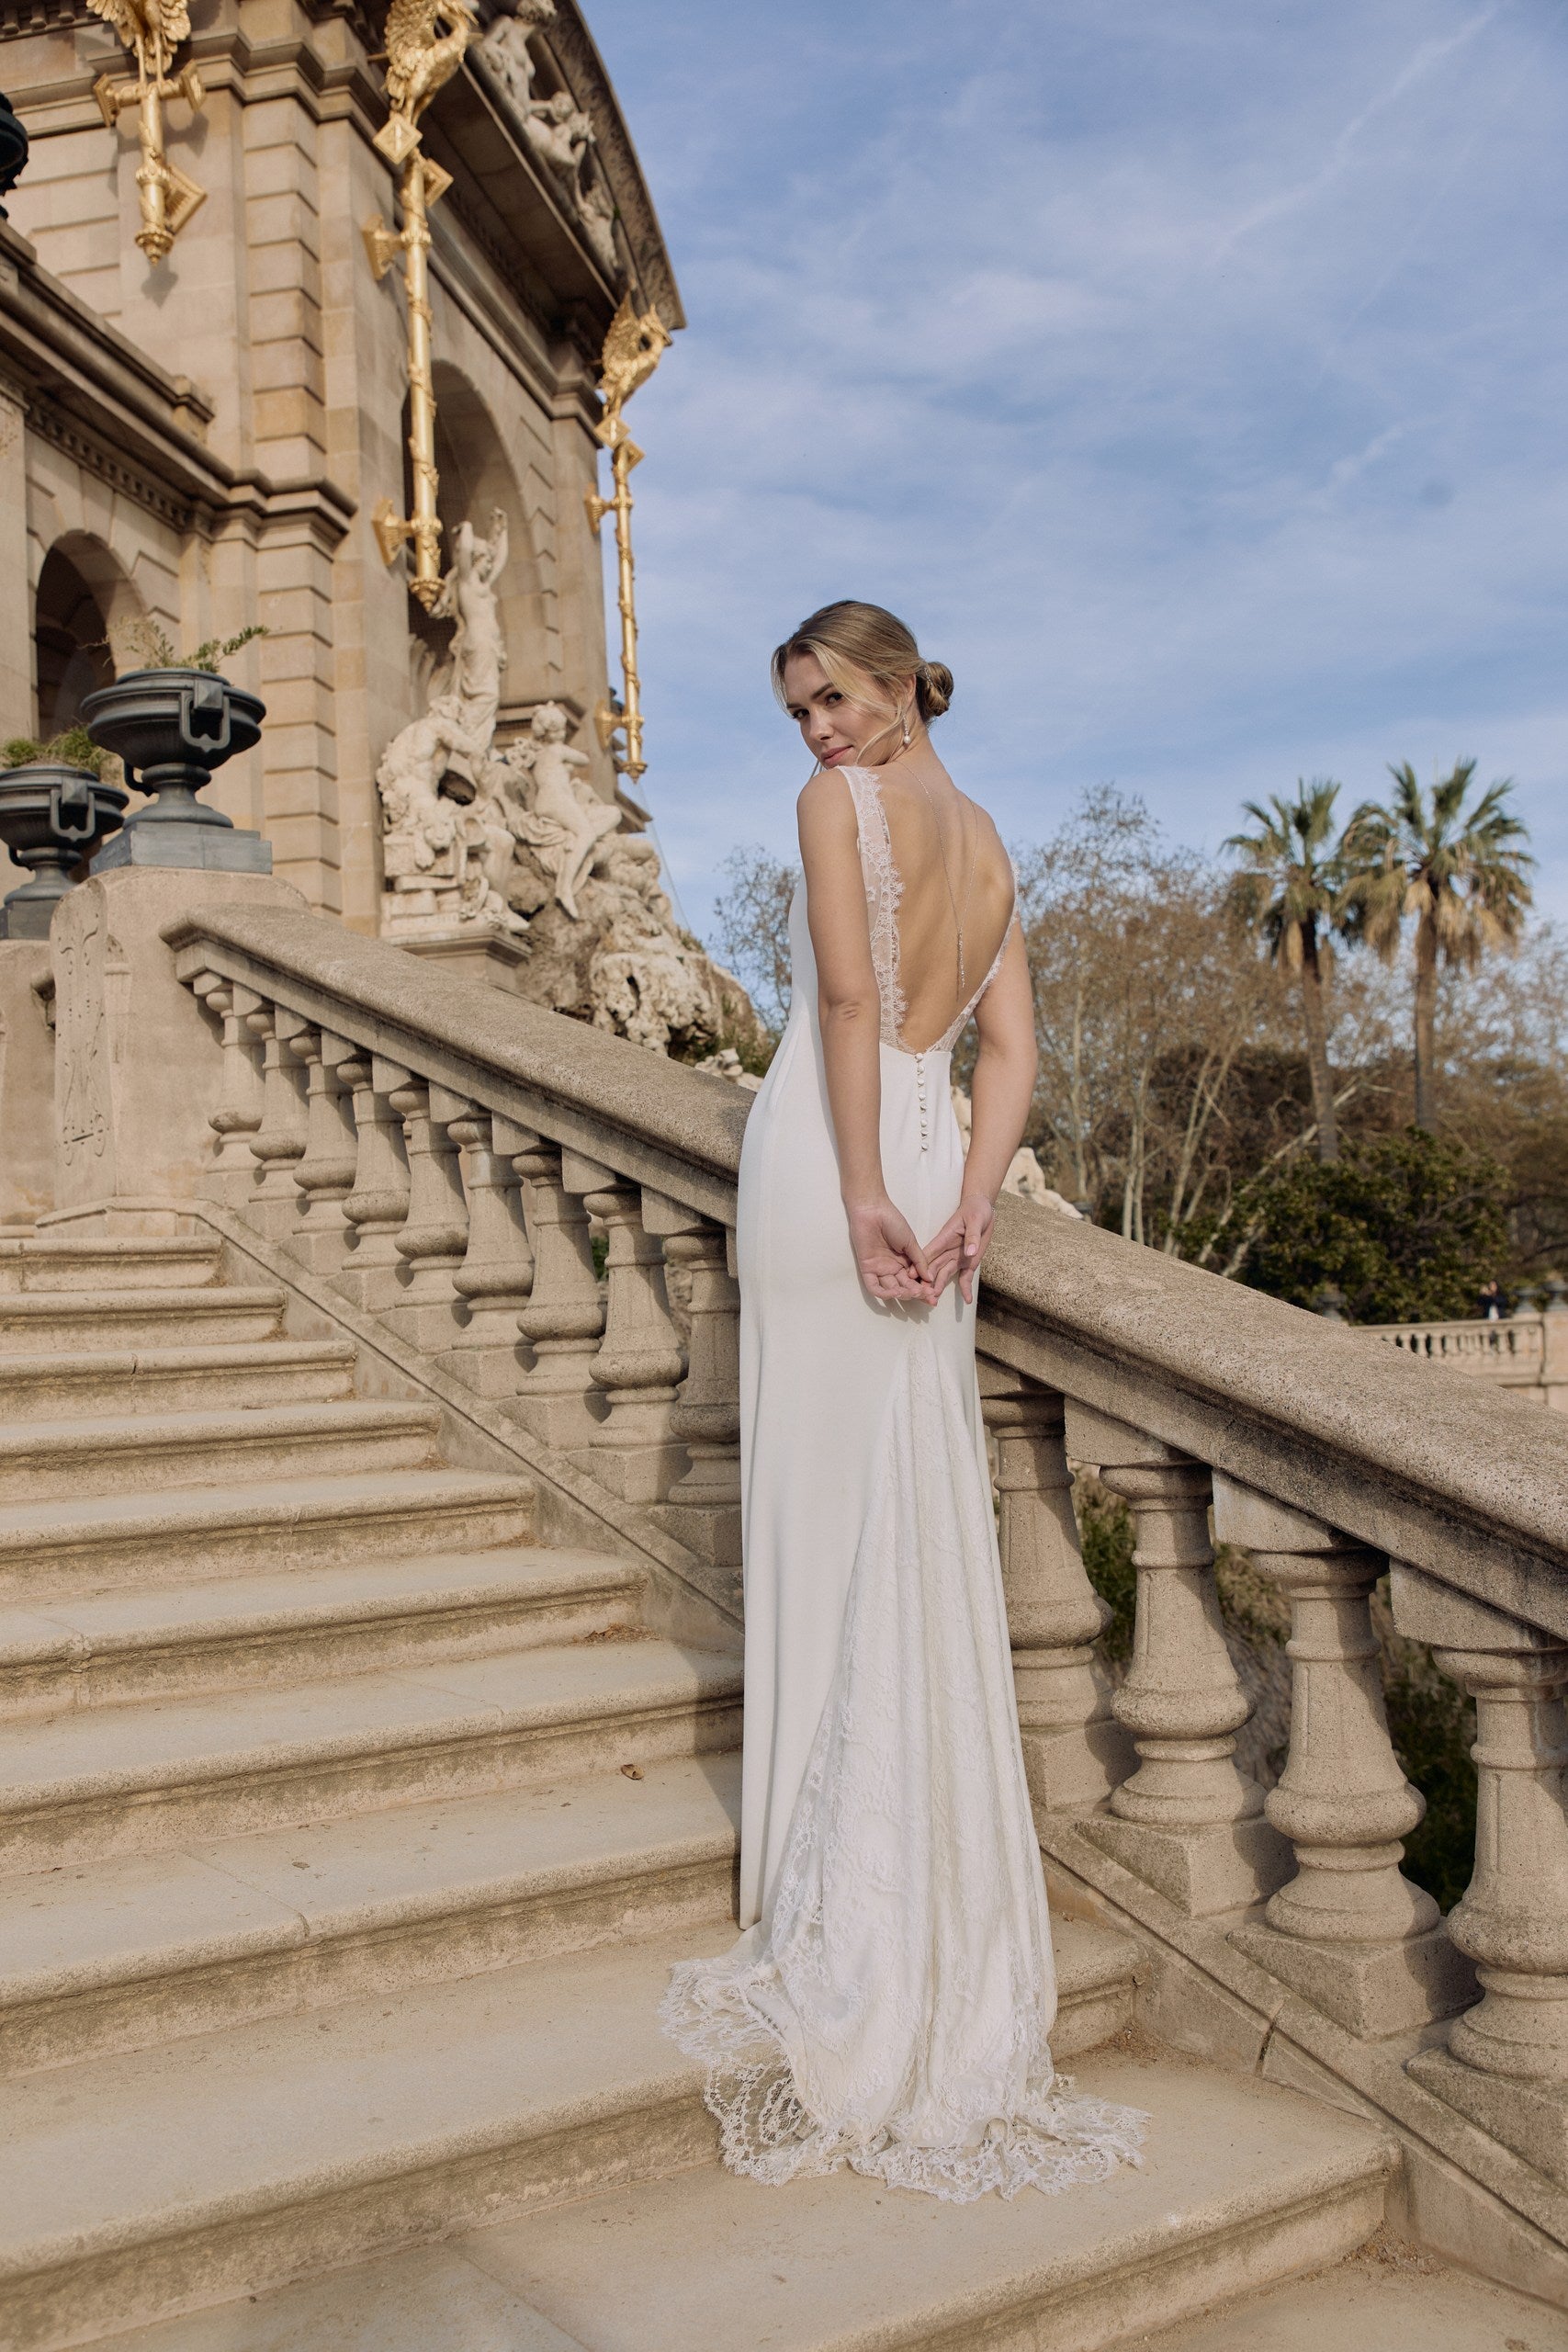 Jeune femme de loin sur des escaliers se tenant les mains de dos donnant une allure romantique à sa tenue et ses bijoux de mariage.